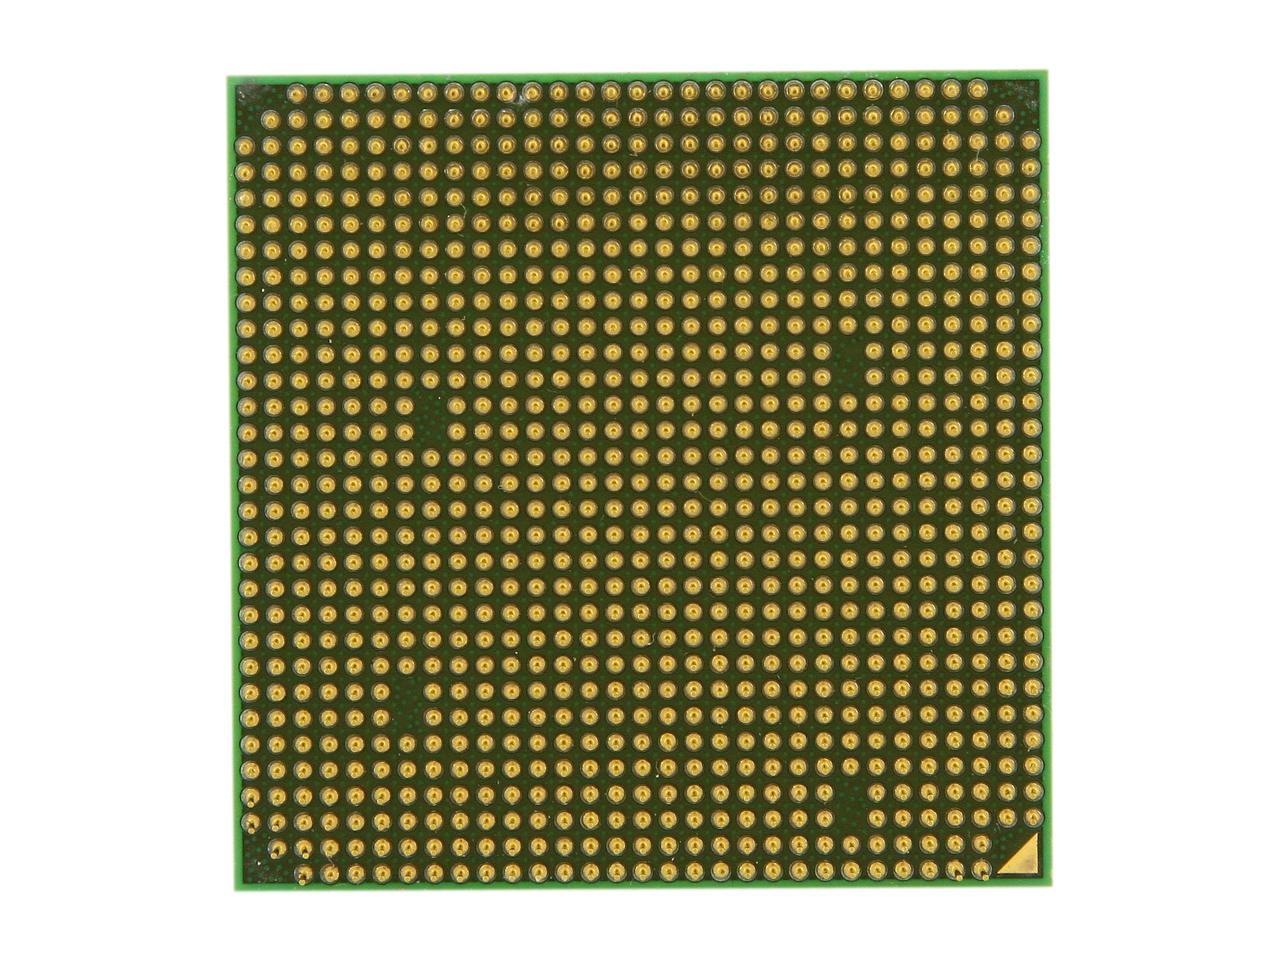 AMD Phenom 8450 Toliman Triple-Core 2.1 GHz Socket AM2+ HD8450WCJ3BGH Desktop Processor